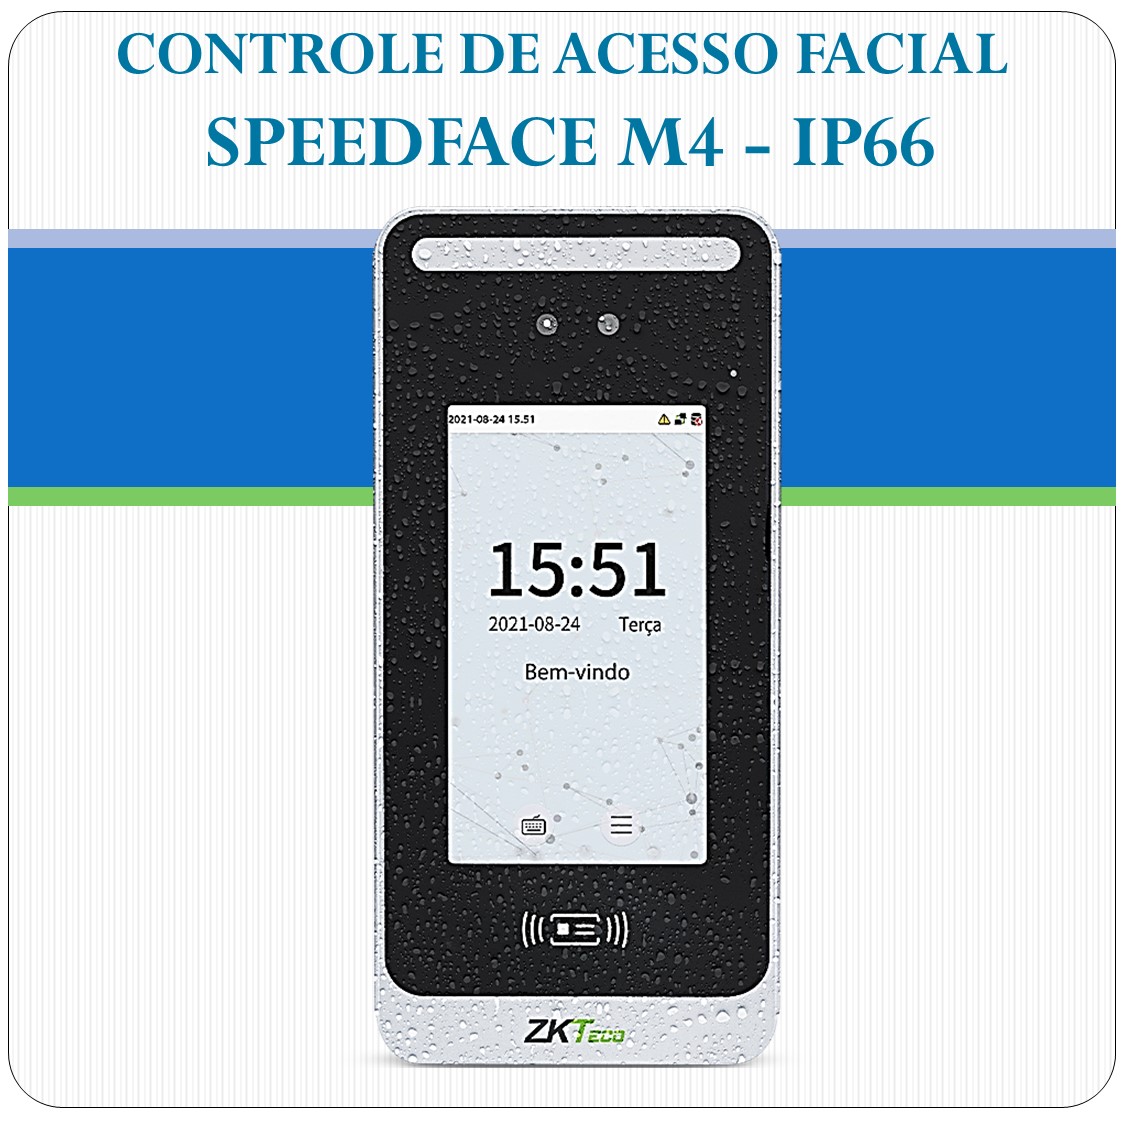 Controle de Acesso Facial SpeedFace M4 - IP66